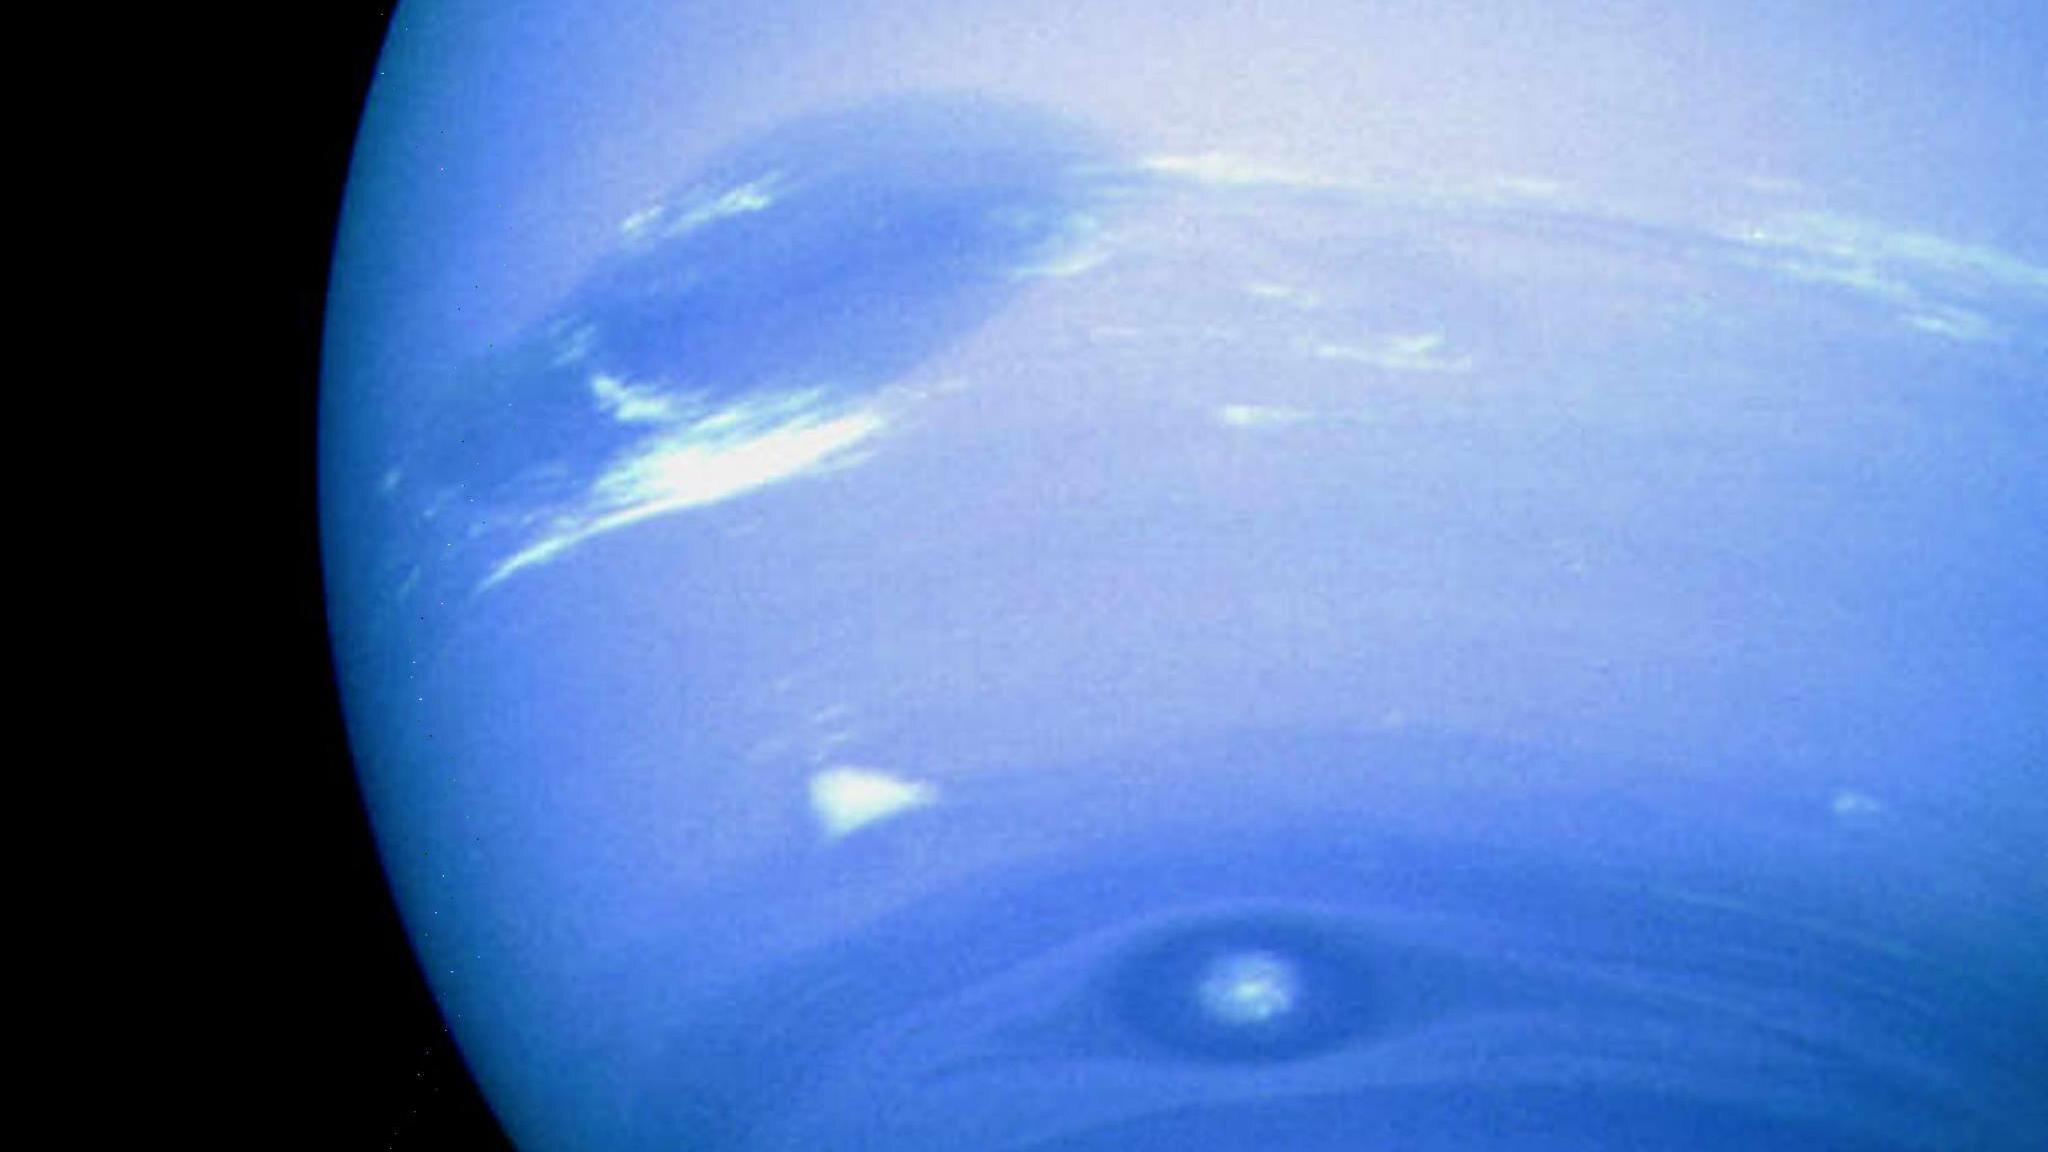 Großer Dunkler Fleck auf dem Planeten Neptun